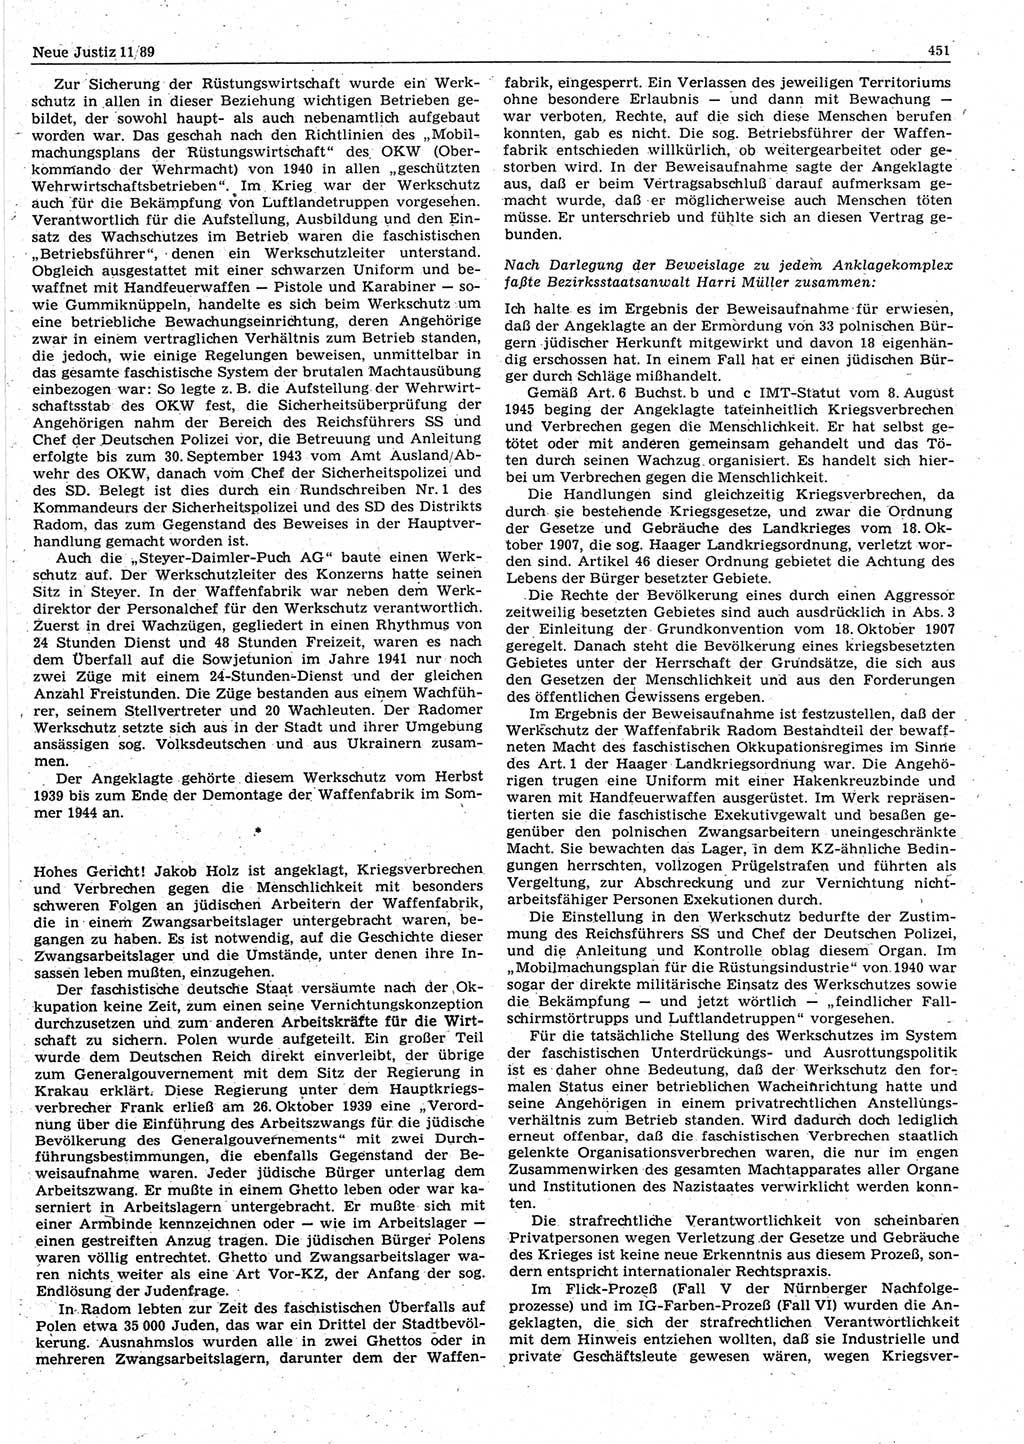 Neue Justiz (NJ), Zeitschrift für sozialistisches Recht und Gesetzlichkeit [Deutsche Demokratische Republik (DDR)], 43. Jahrgang 1989, Seite 451 (NJ DDR 1989, S. 451)